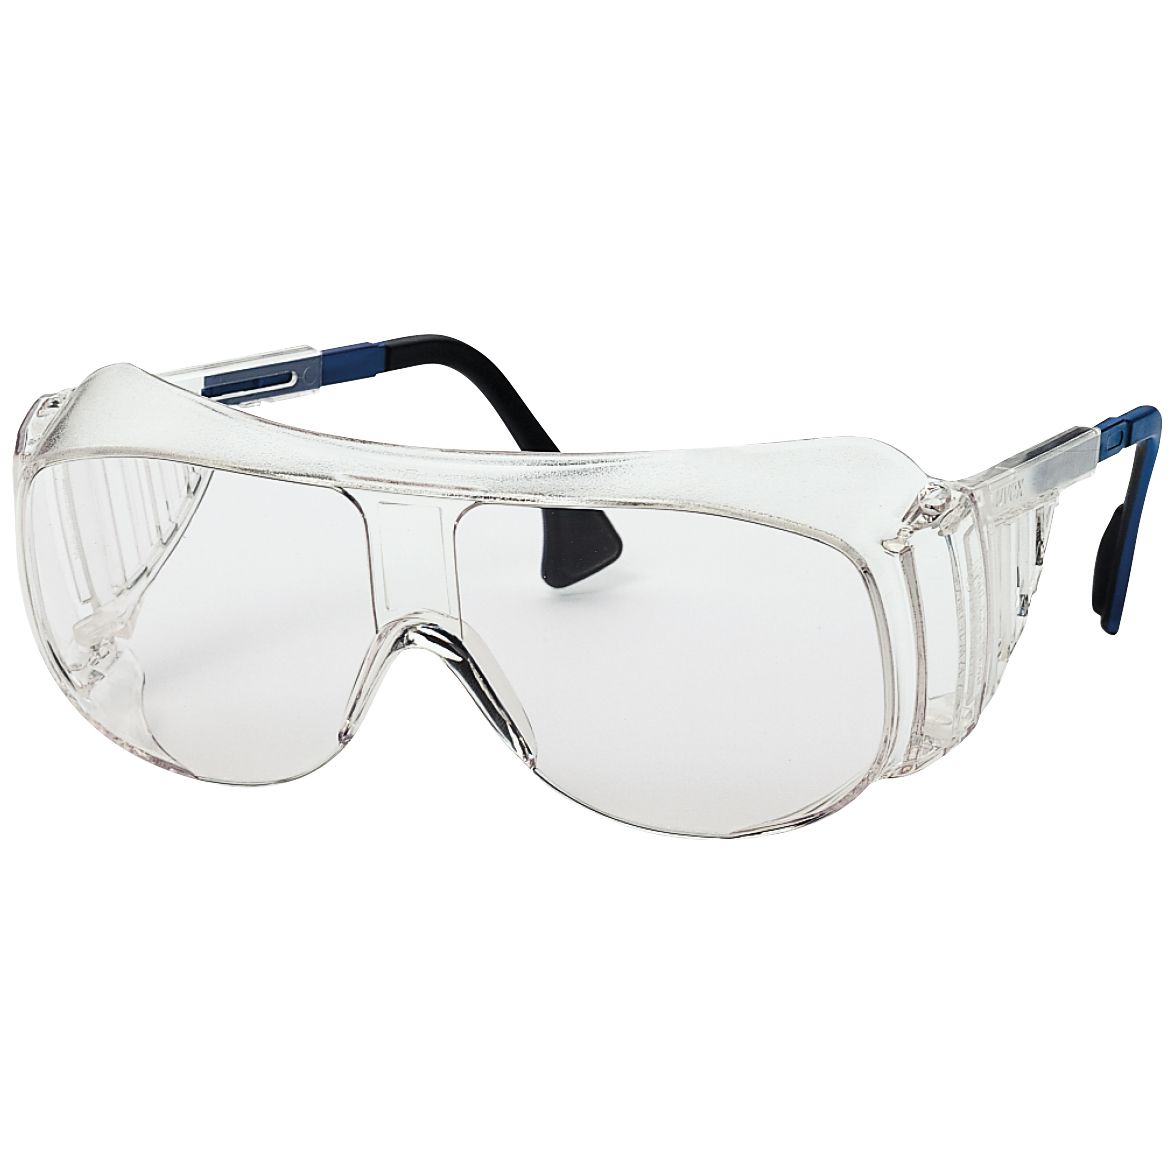 uvex 9161 Vollsicht-Schutzbrille - kratz- & beschlagfest dank supravision plus - EN 166/170 - Klar-Blau/Klar